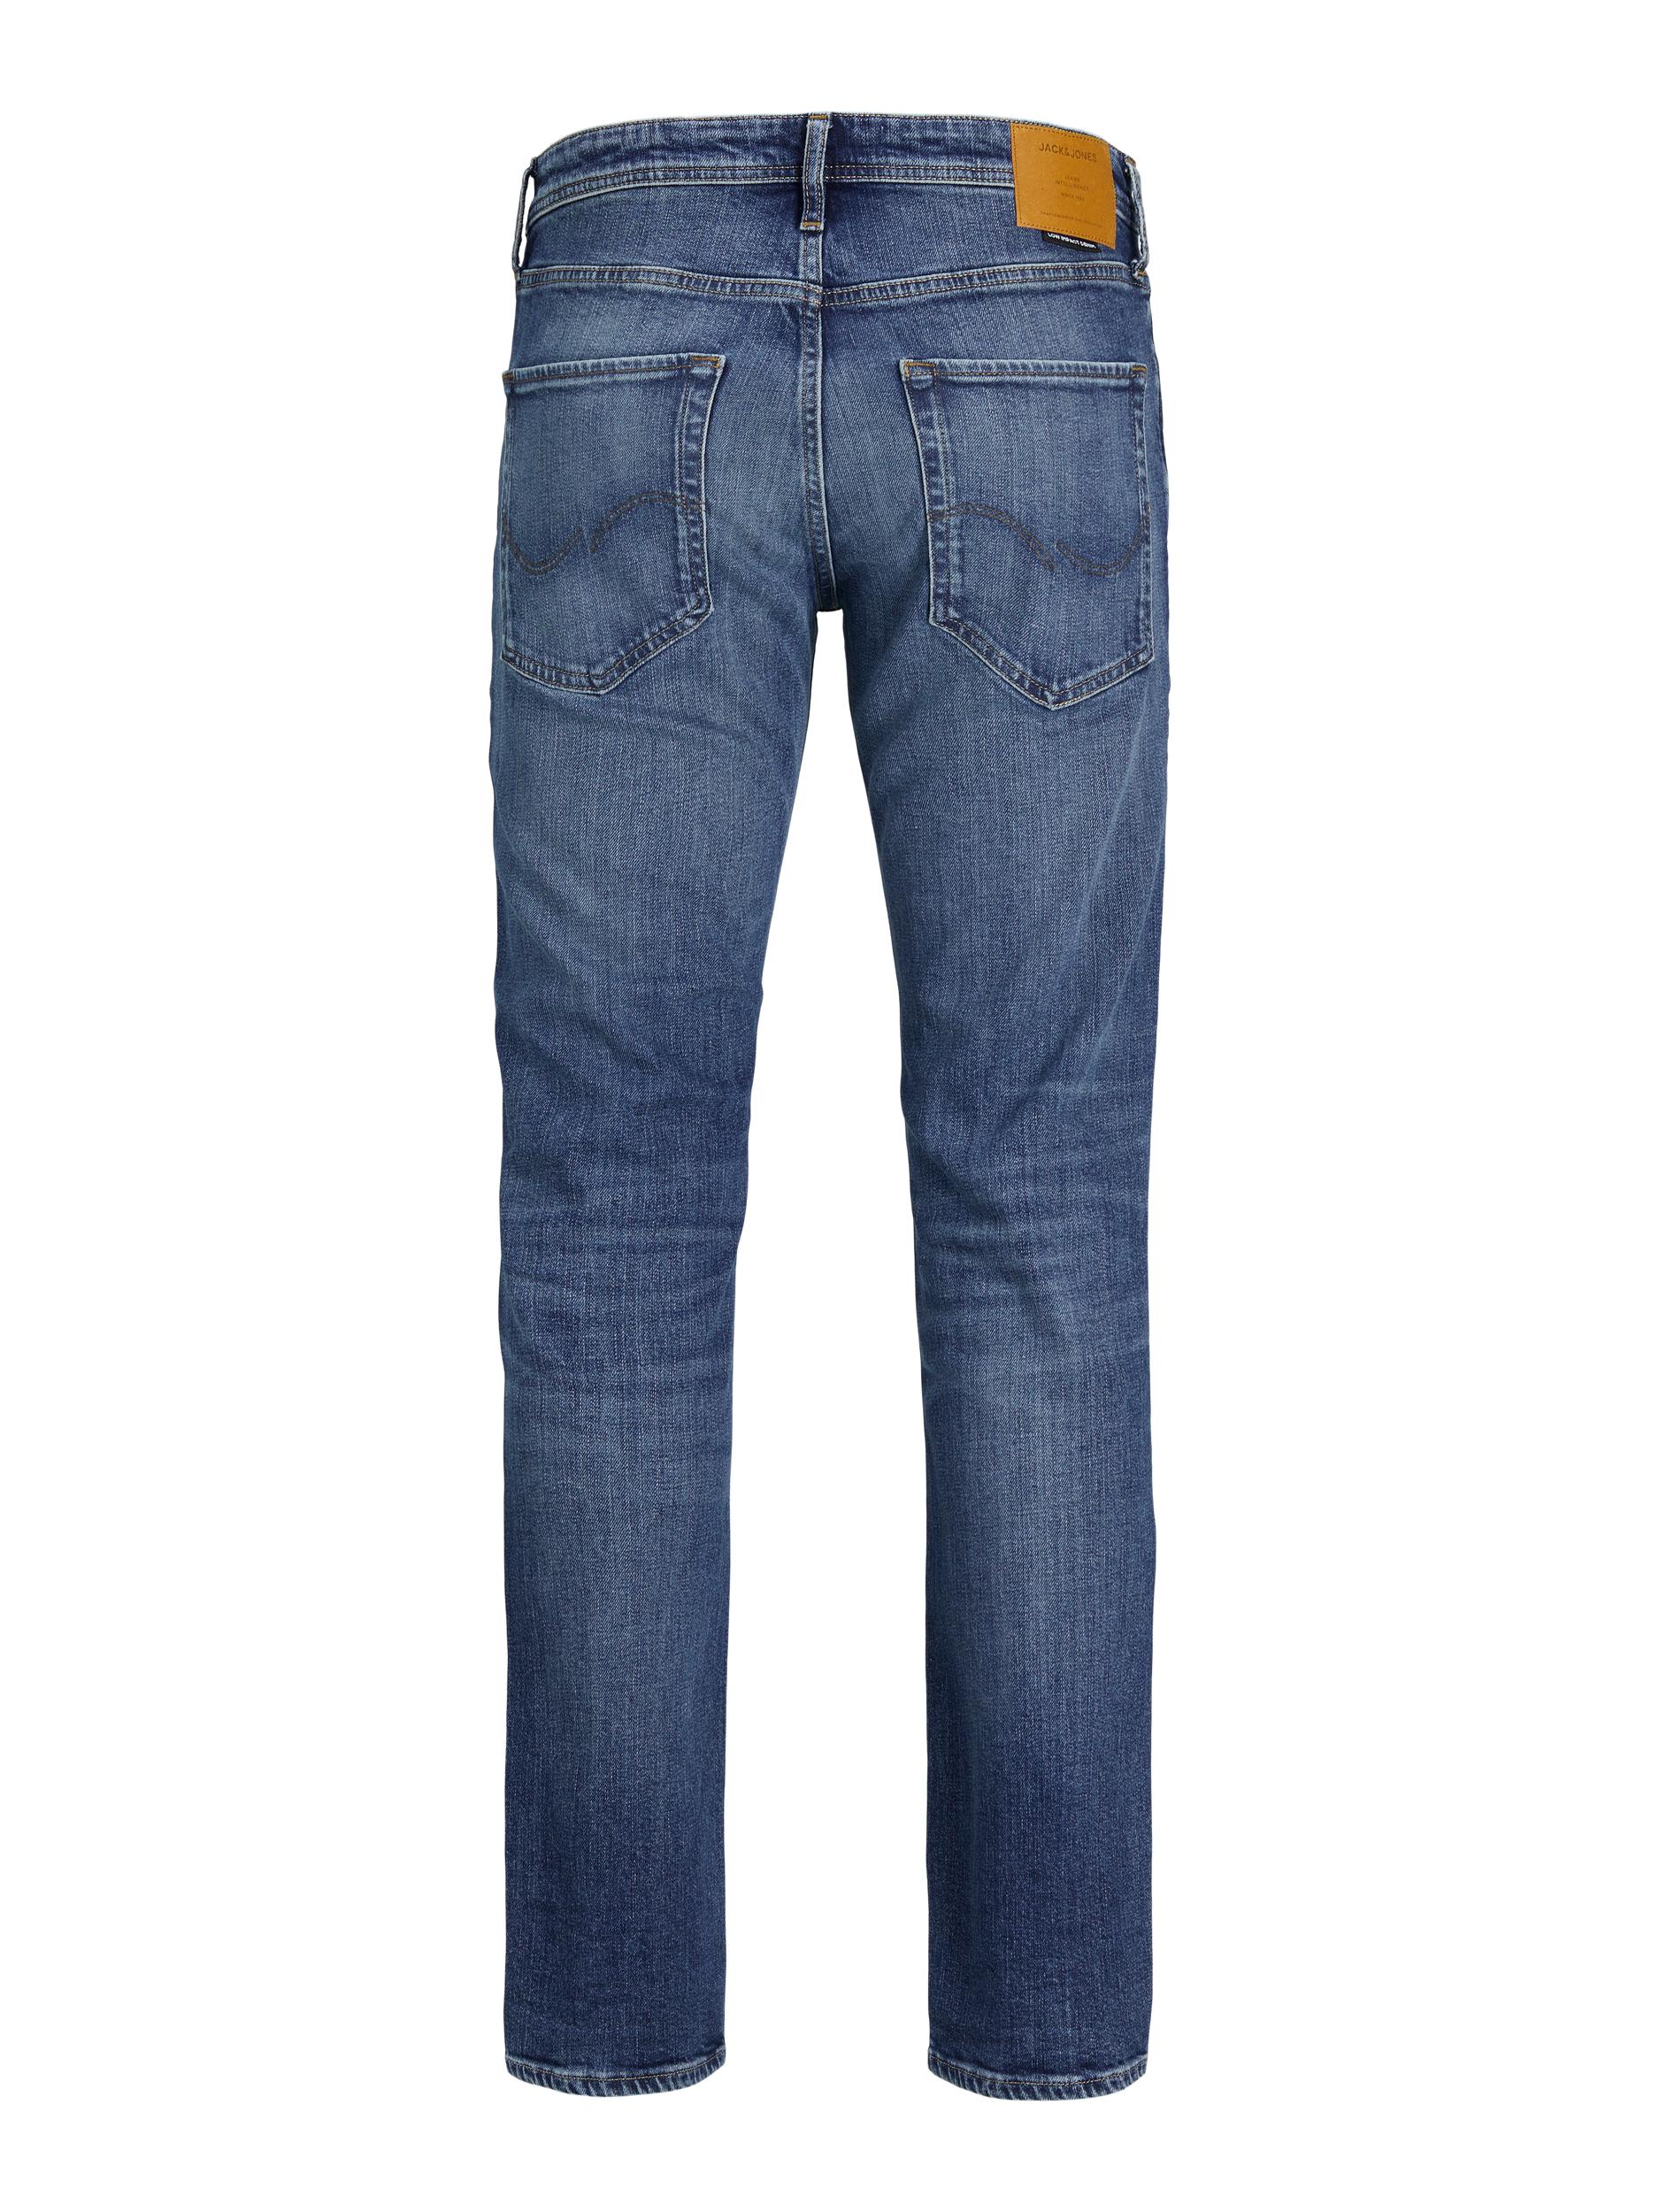  Clark Jeans, Blue Denim, W31/L30